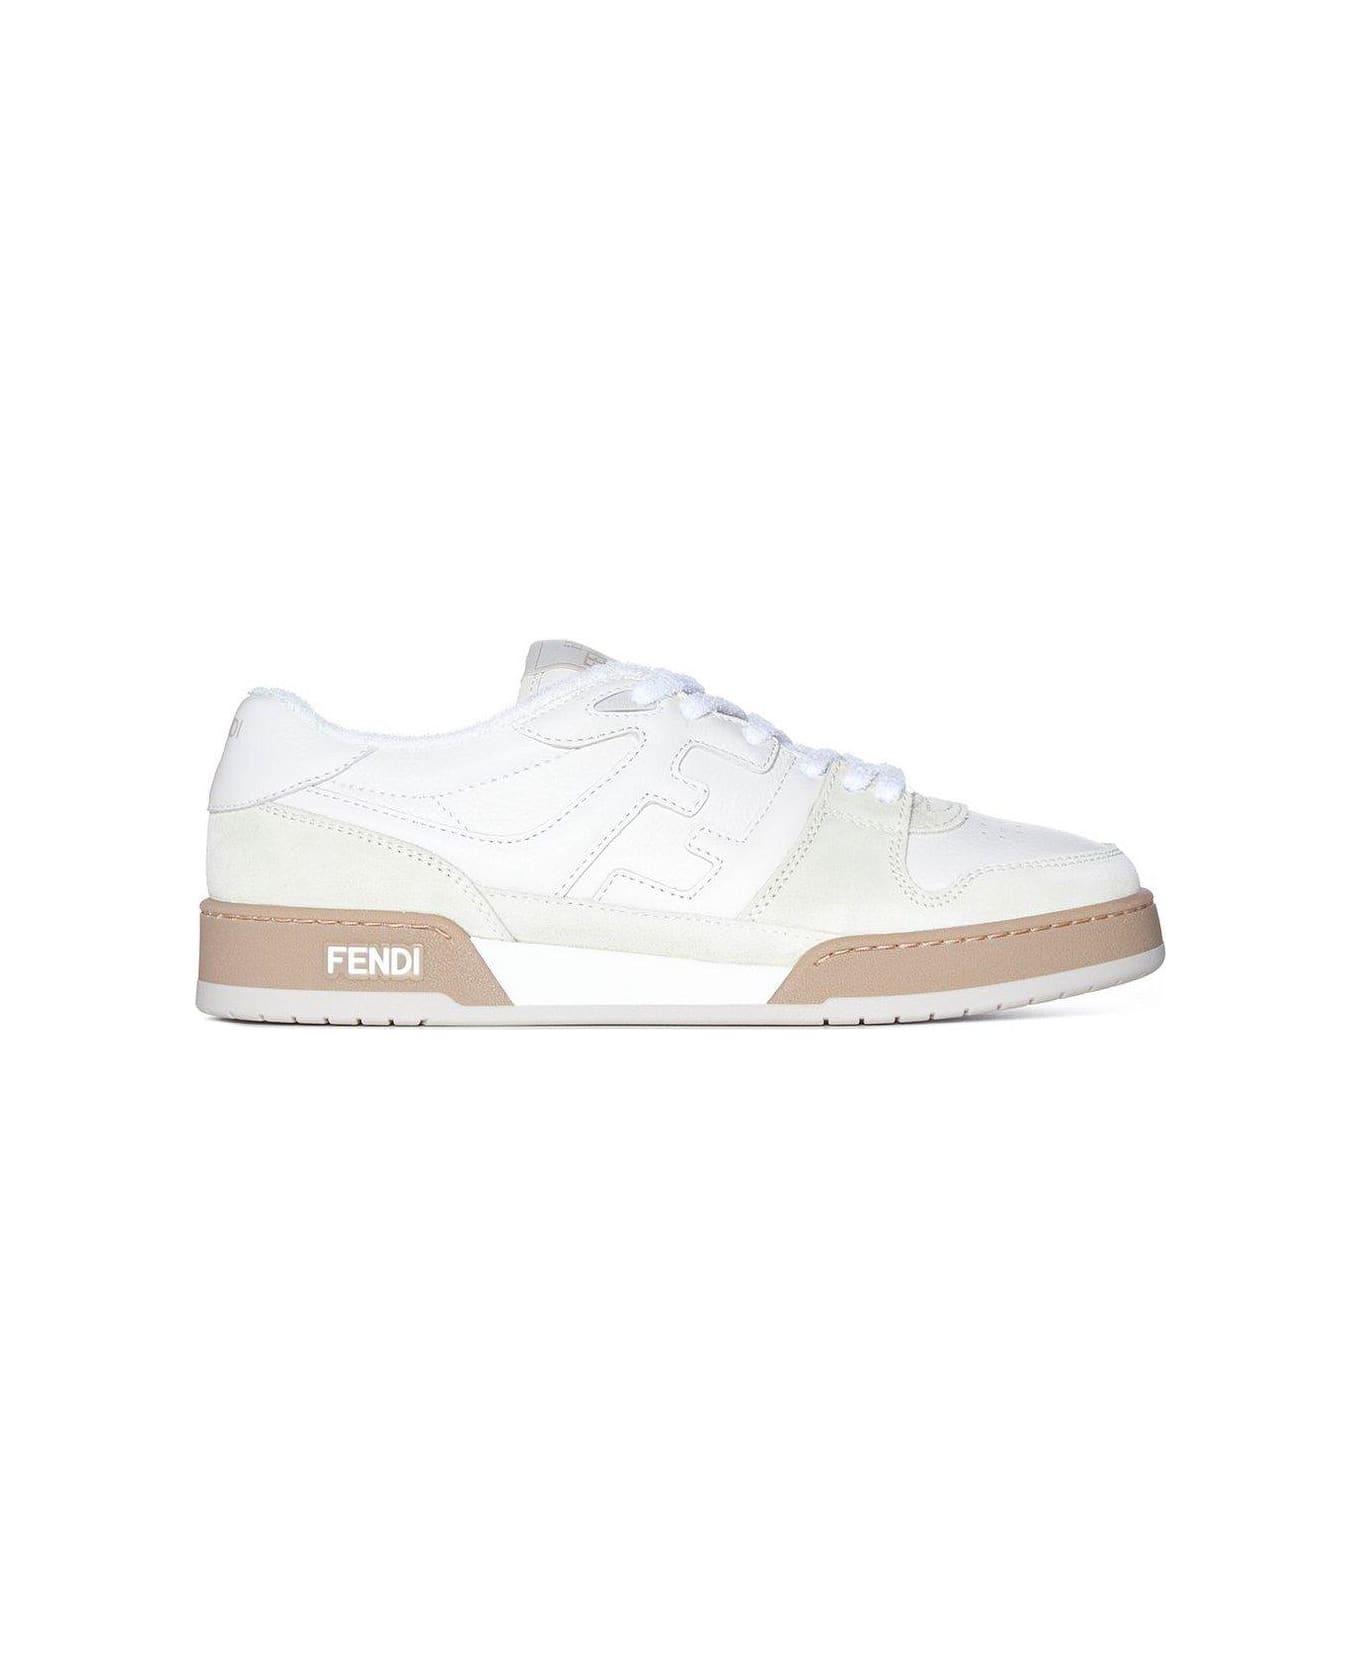 Fendi Match Lace-up Sneakers - Ice+bianco fendi+ice